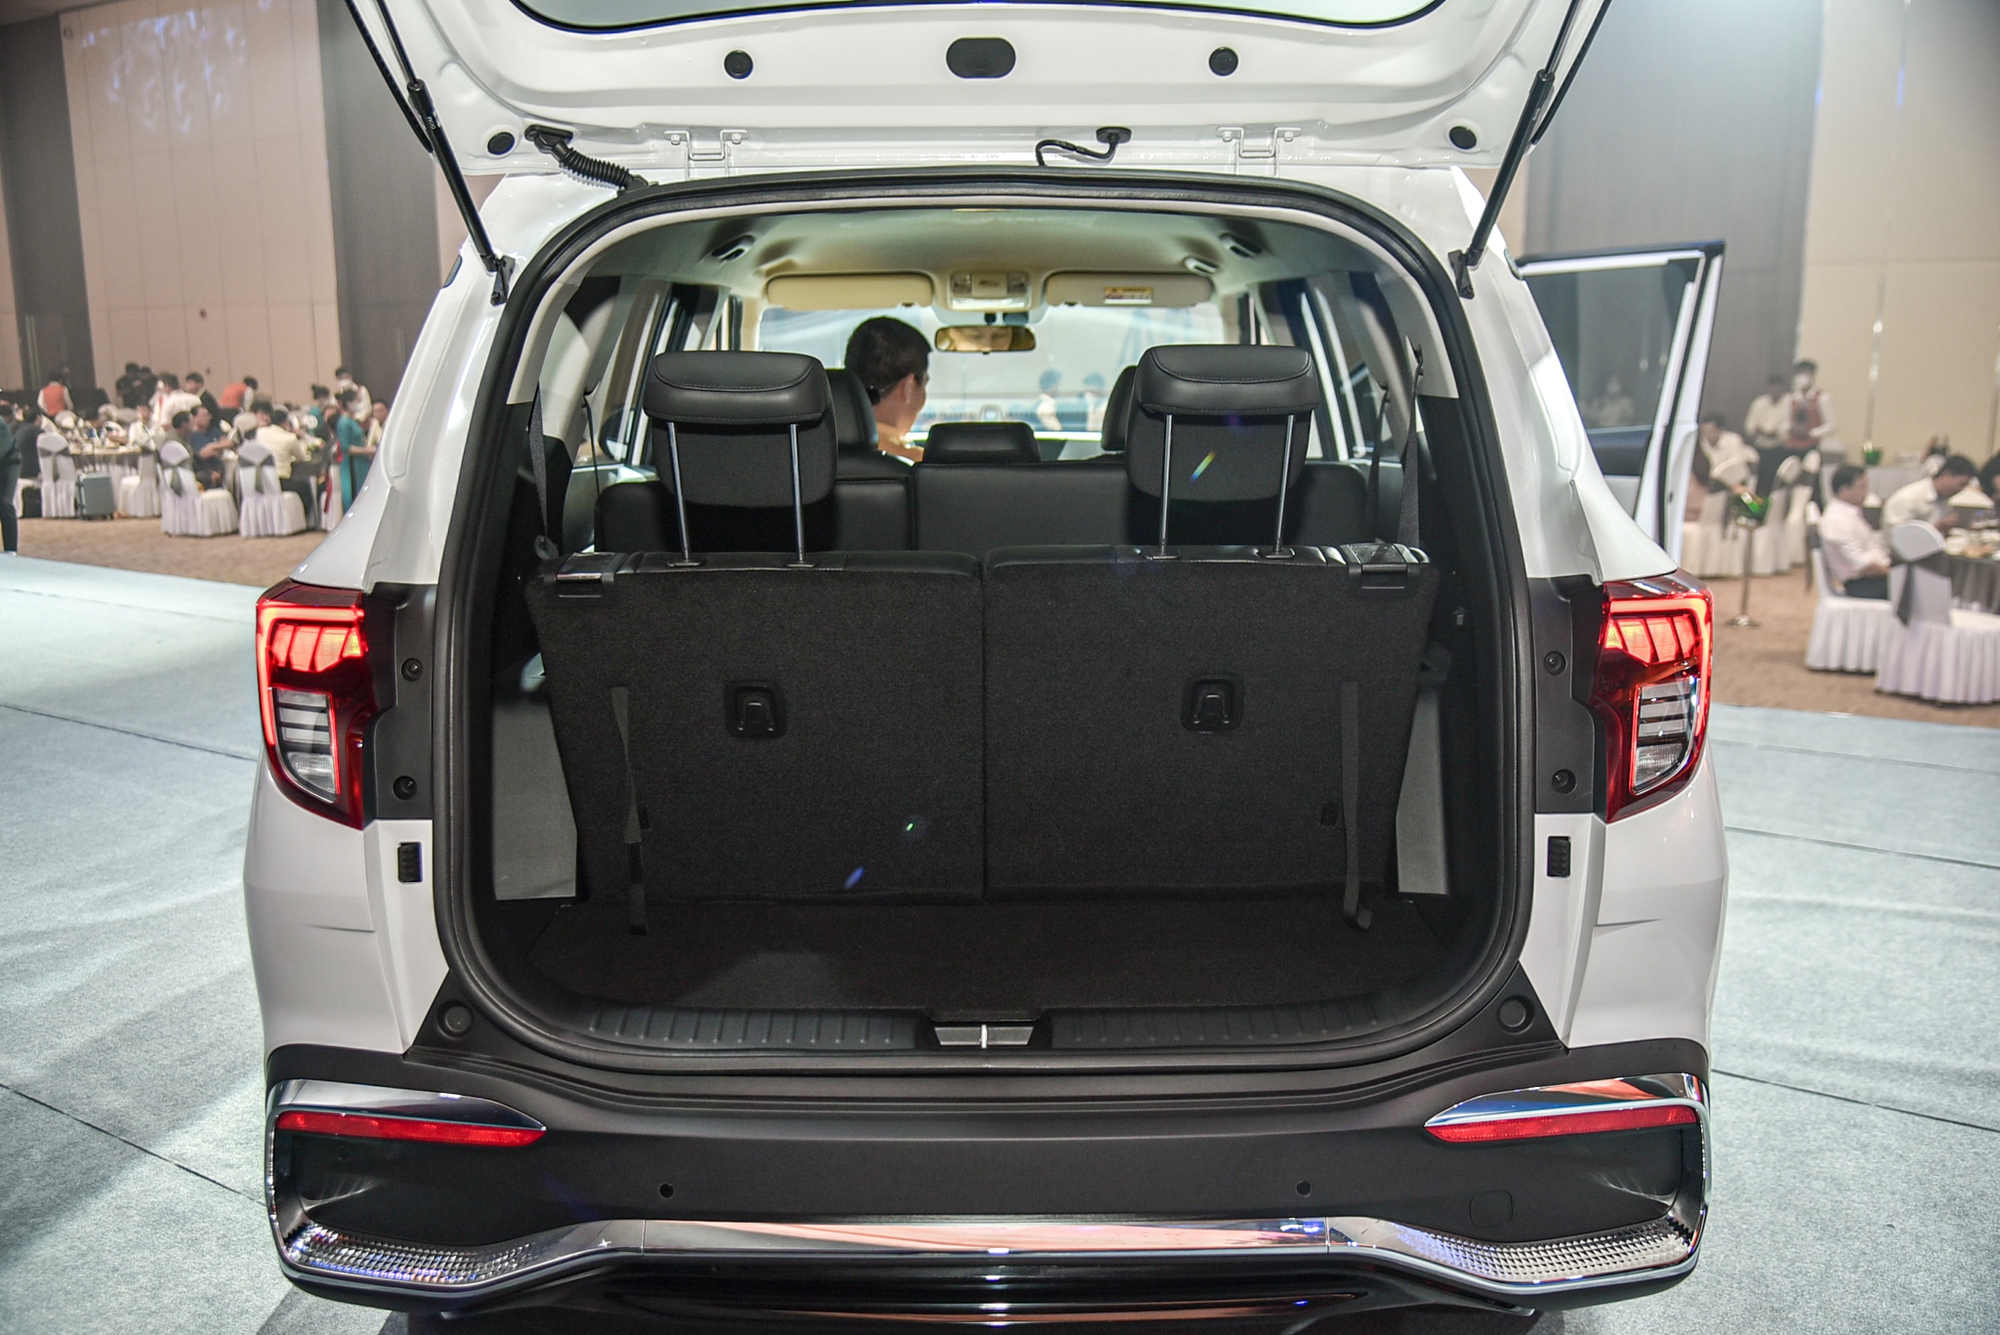 Chi tiết Kia Carens phiên bản xăng 1.5 Luxury: Giá 699 triệu đồng, thiếu nhiều trang bị so với phiên bản cao hơn - Ảnh 16.